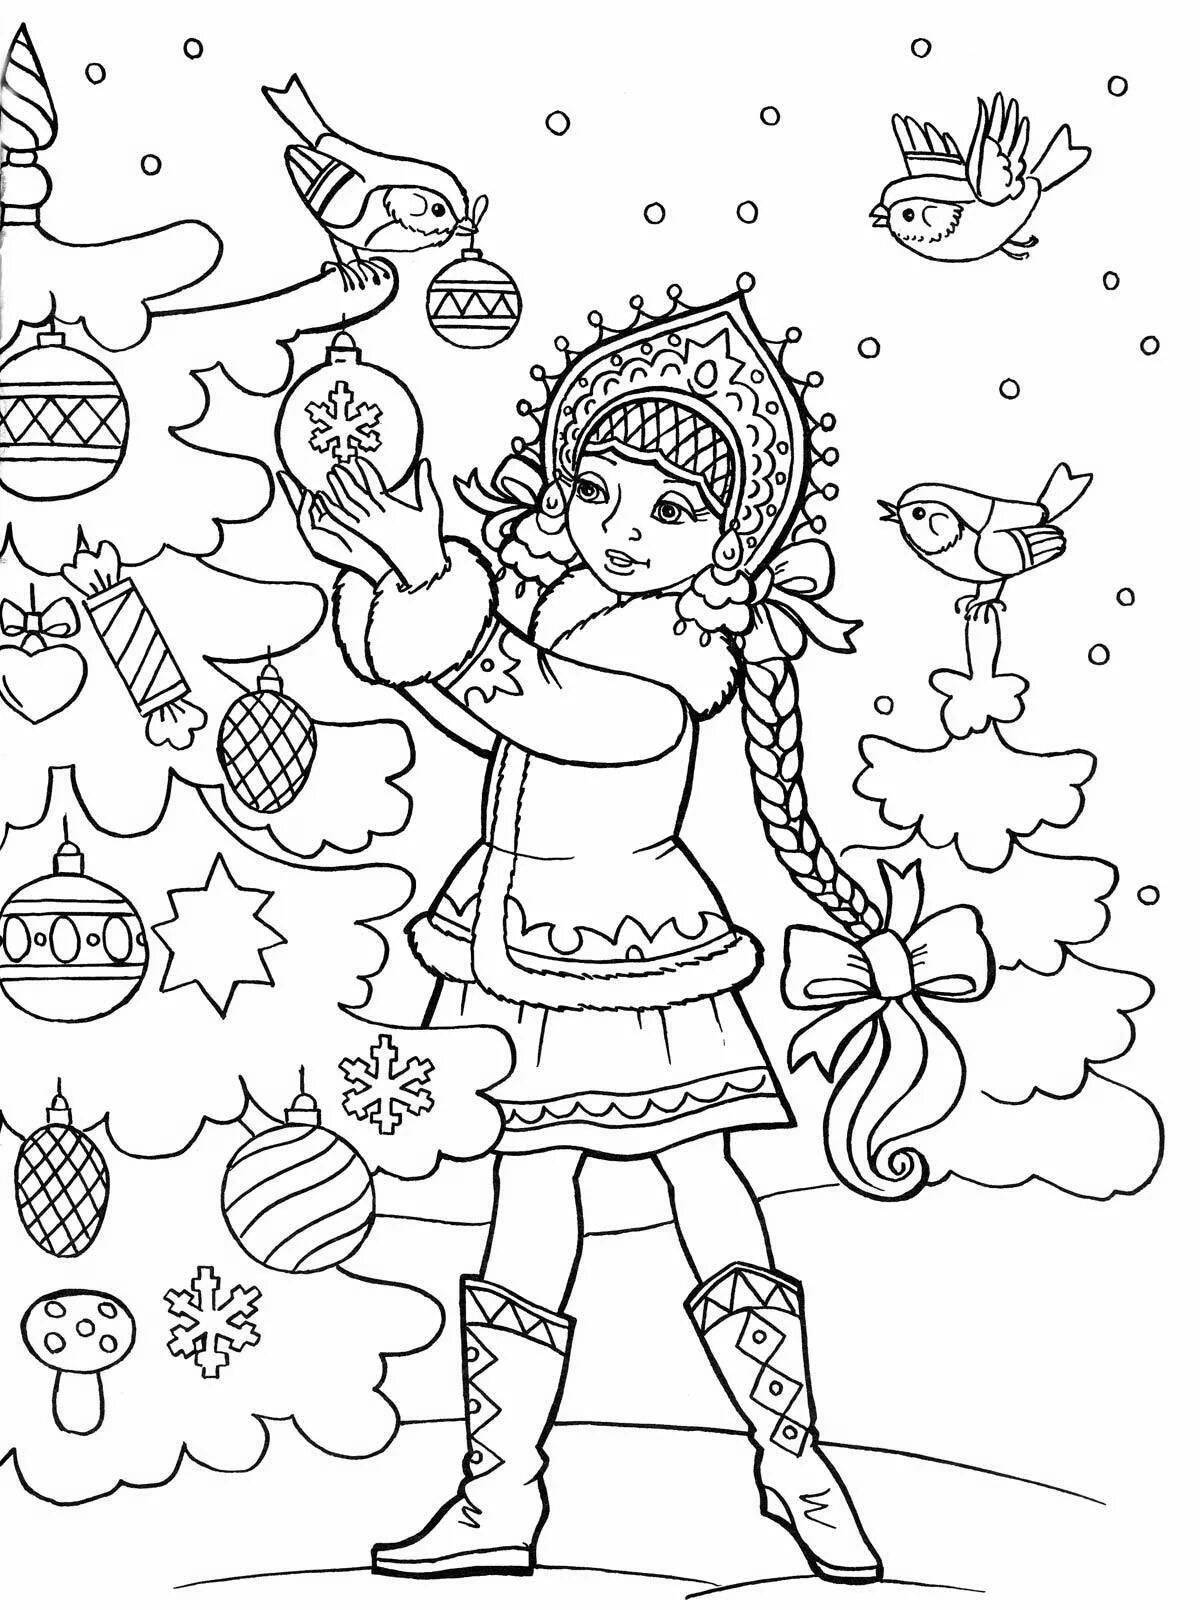 Magic Christmas drawing for kids